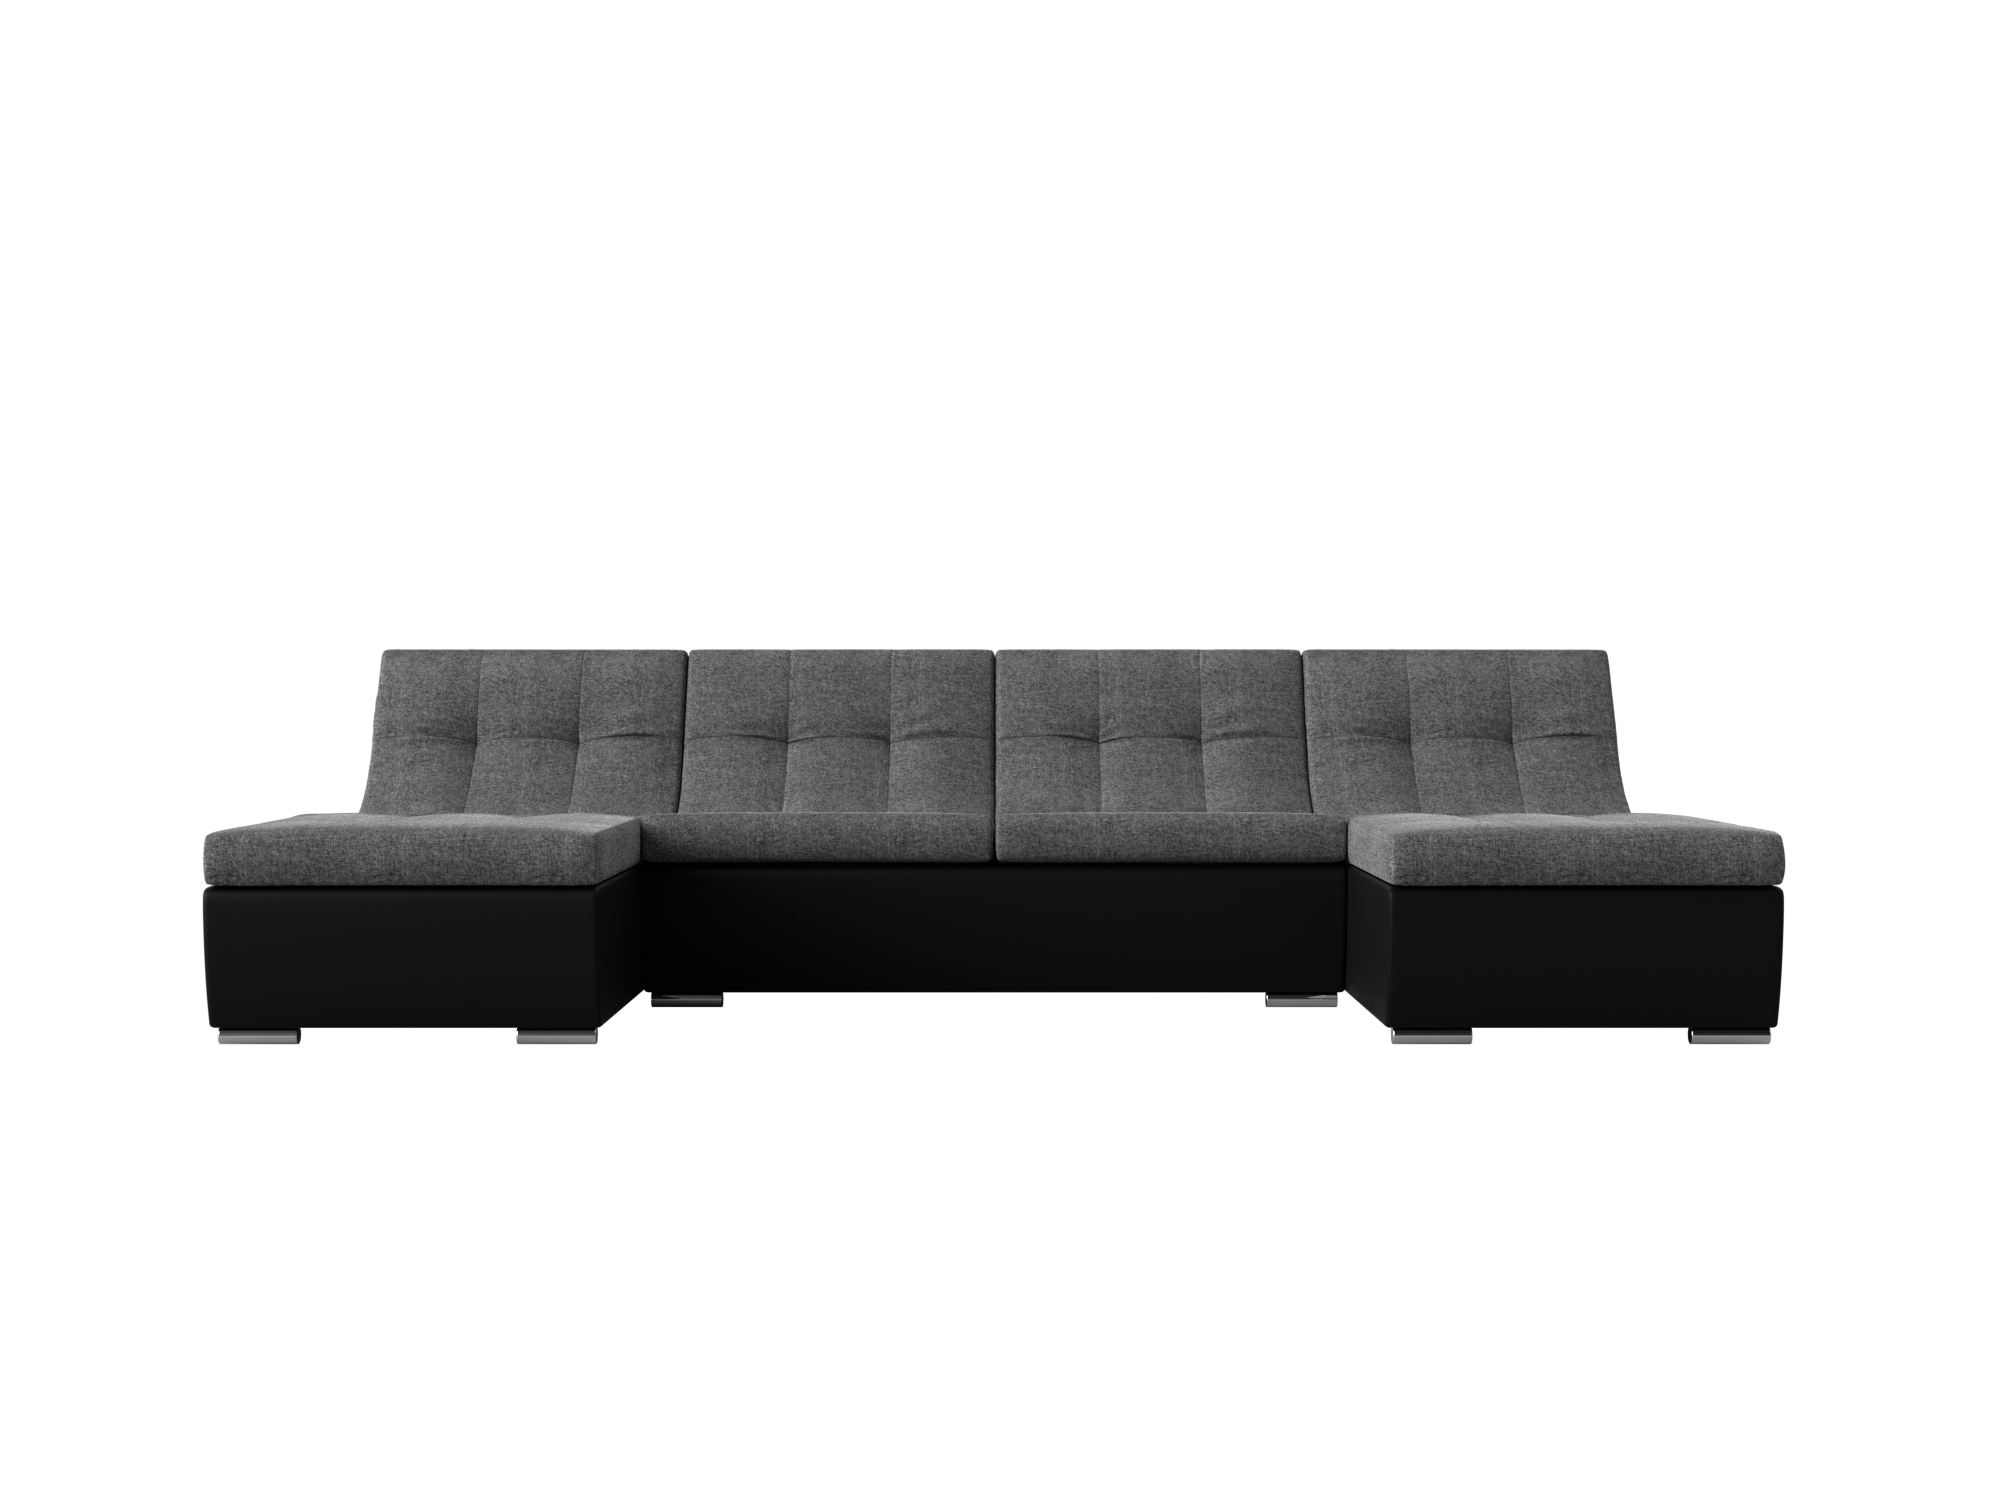 П-образный модульный диван Монреаль MebelVia Серый, Черный, Рогожка, Экокожа, ЛДСП модульный диван лига диванов холидей рогожка серый п образный